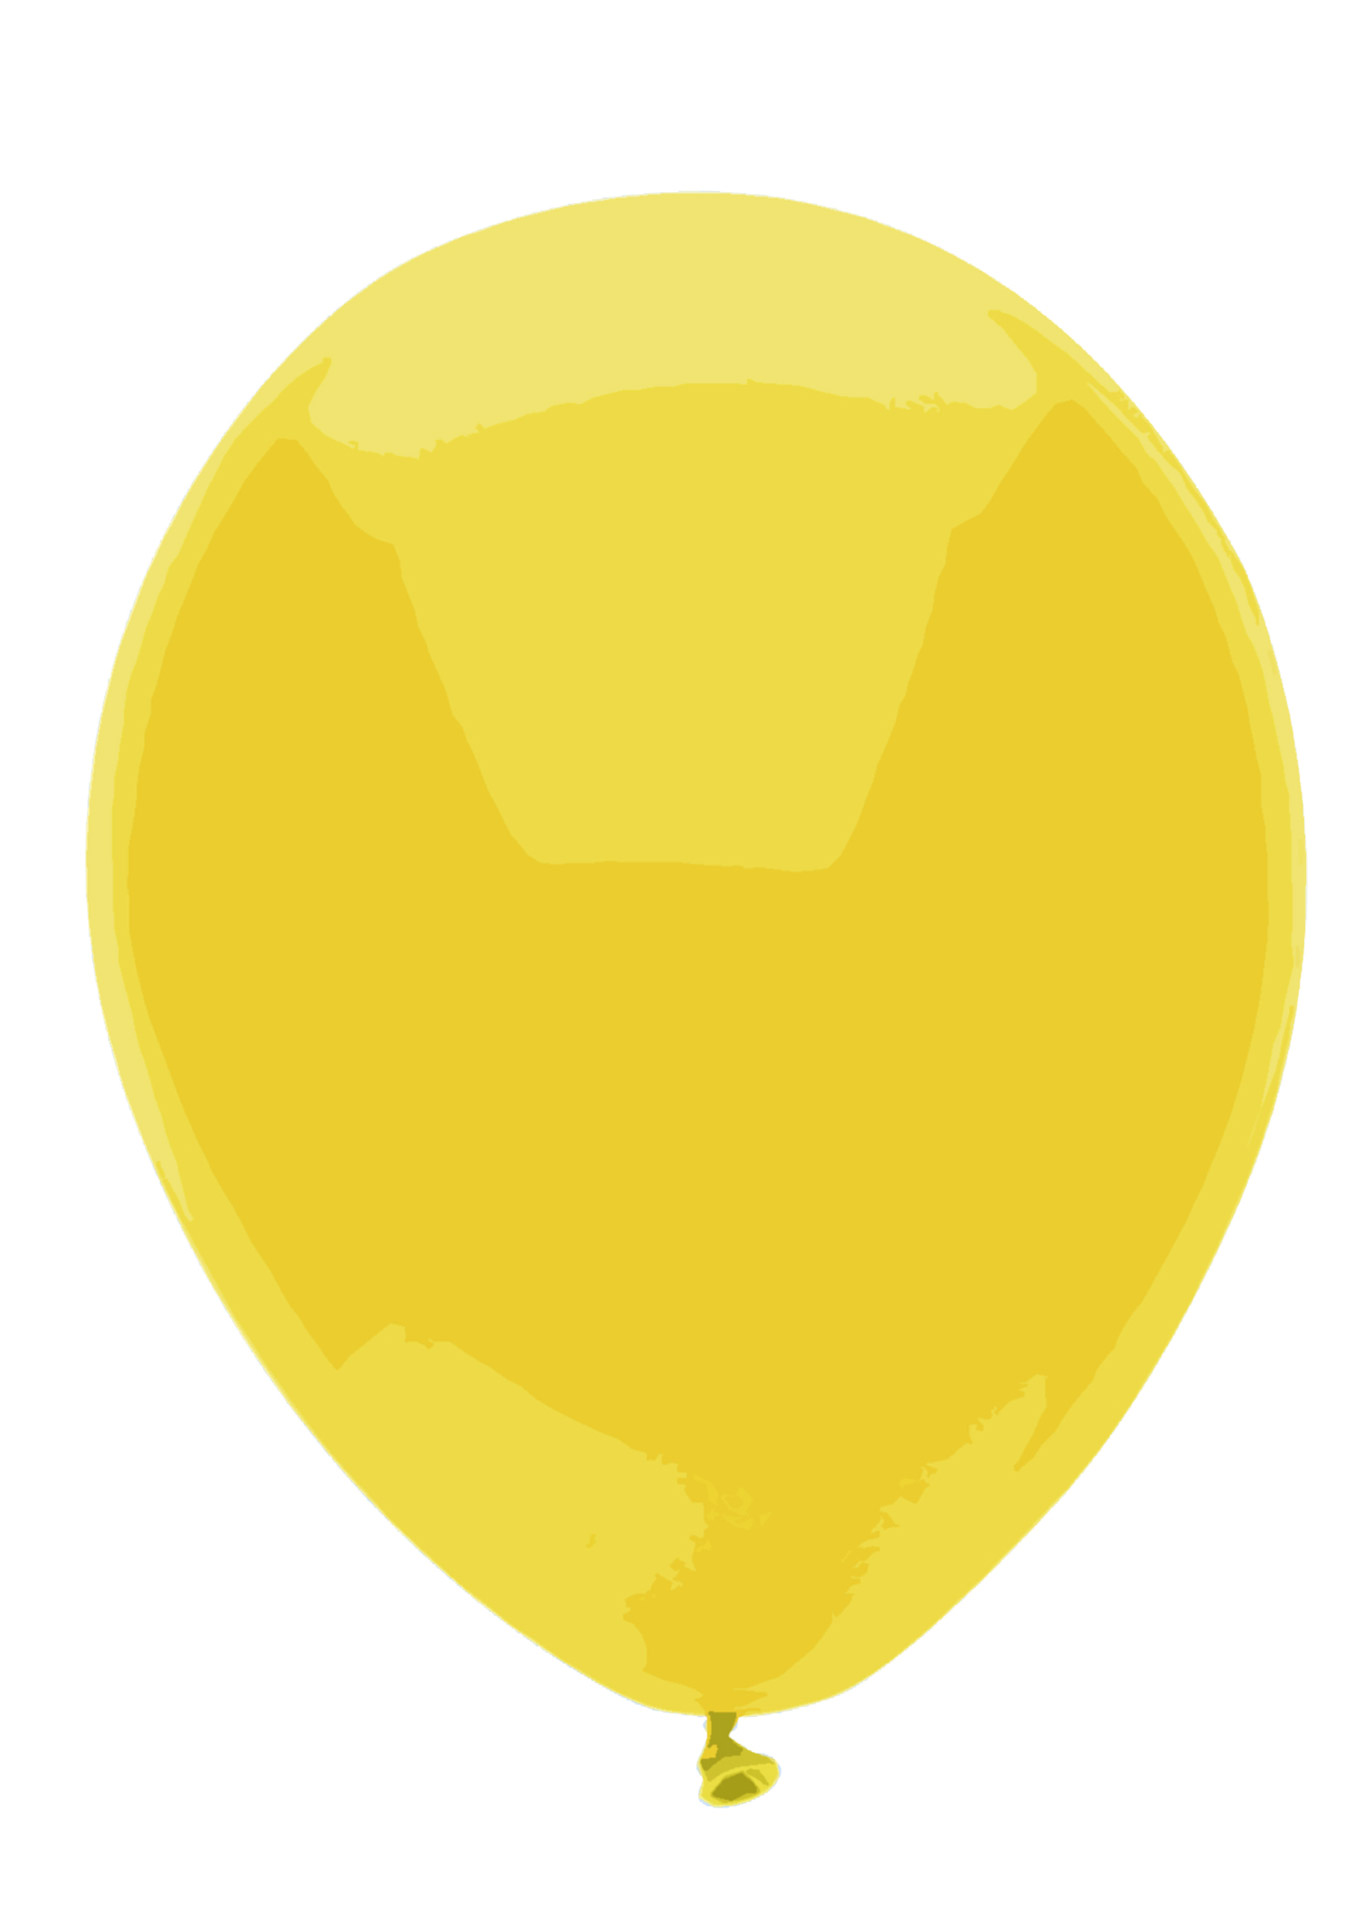 yellow balloon clipart - photo #30